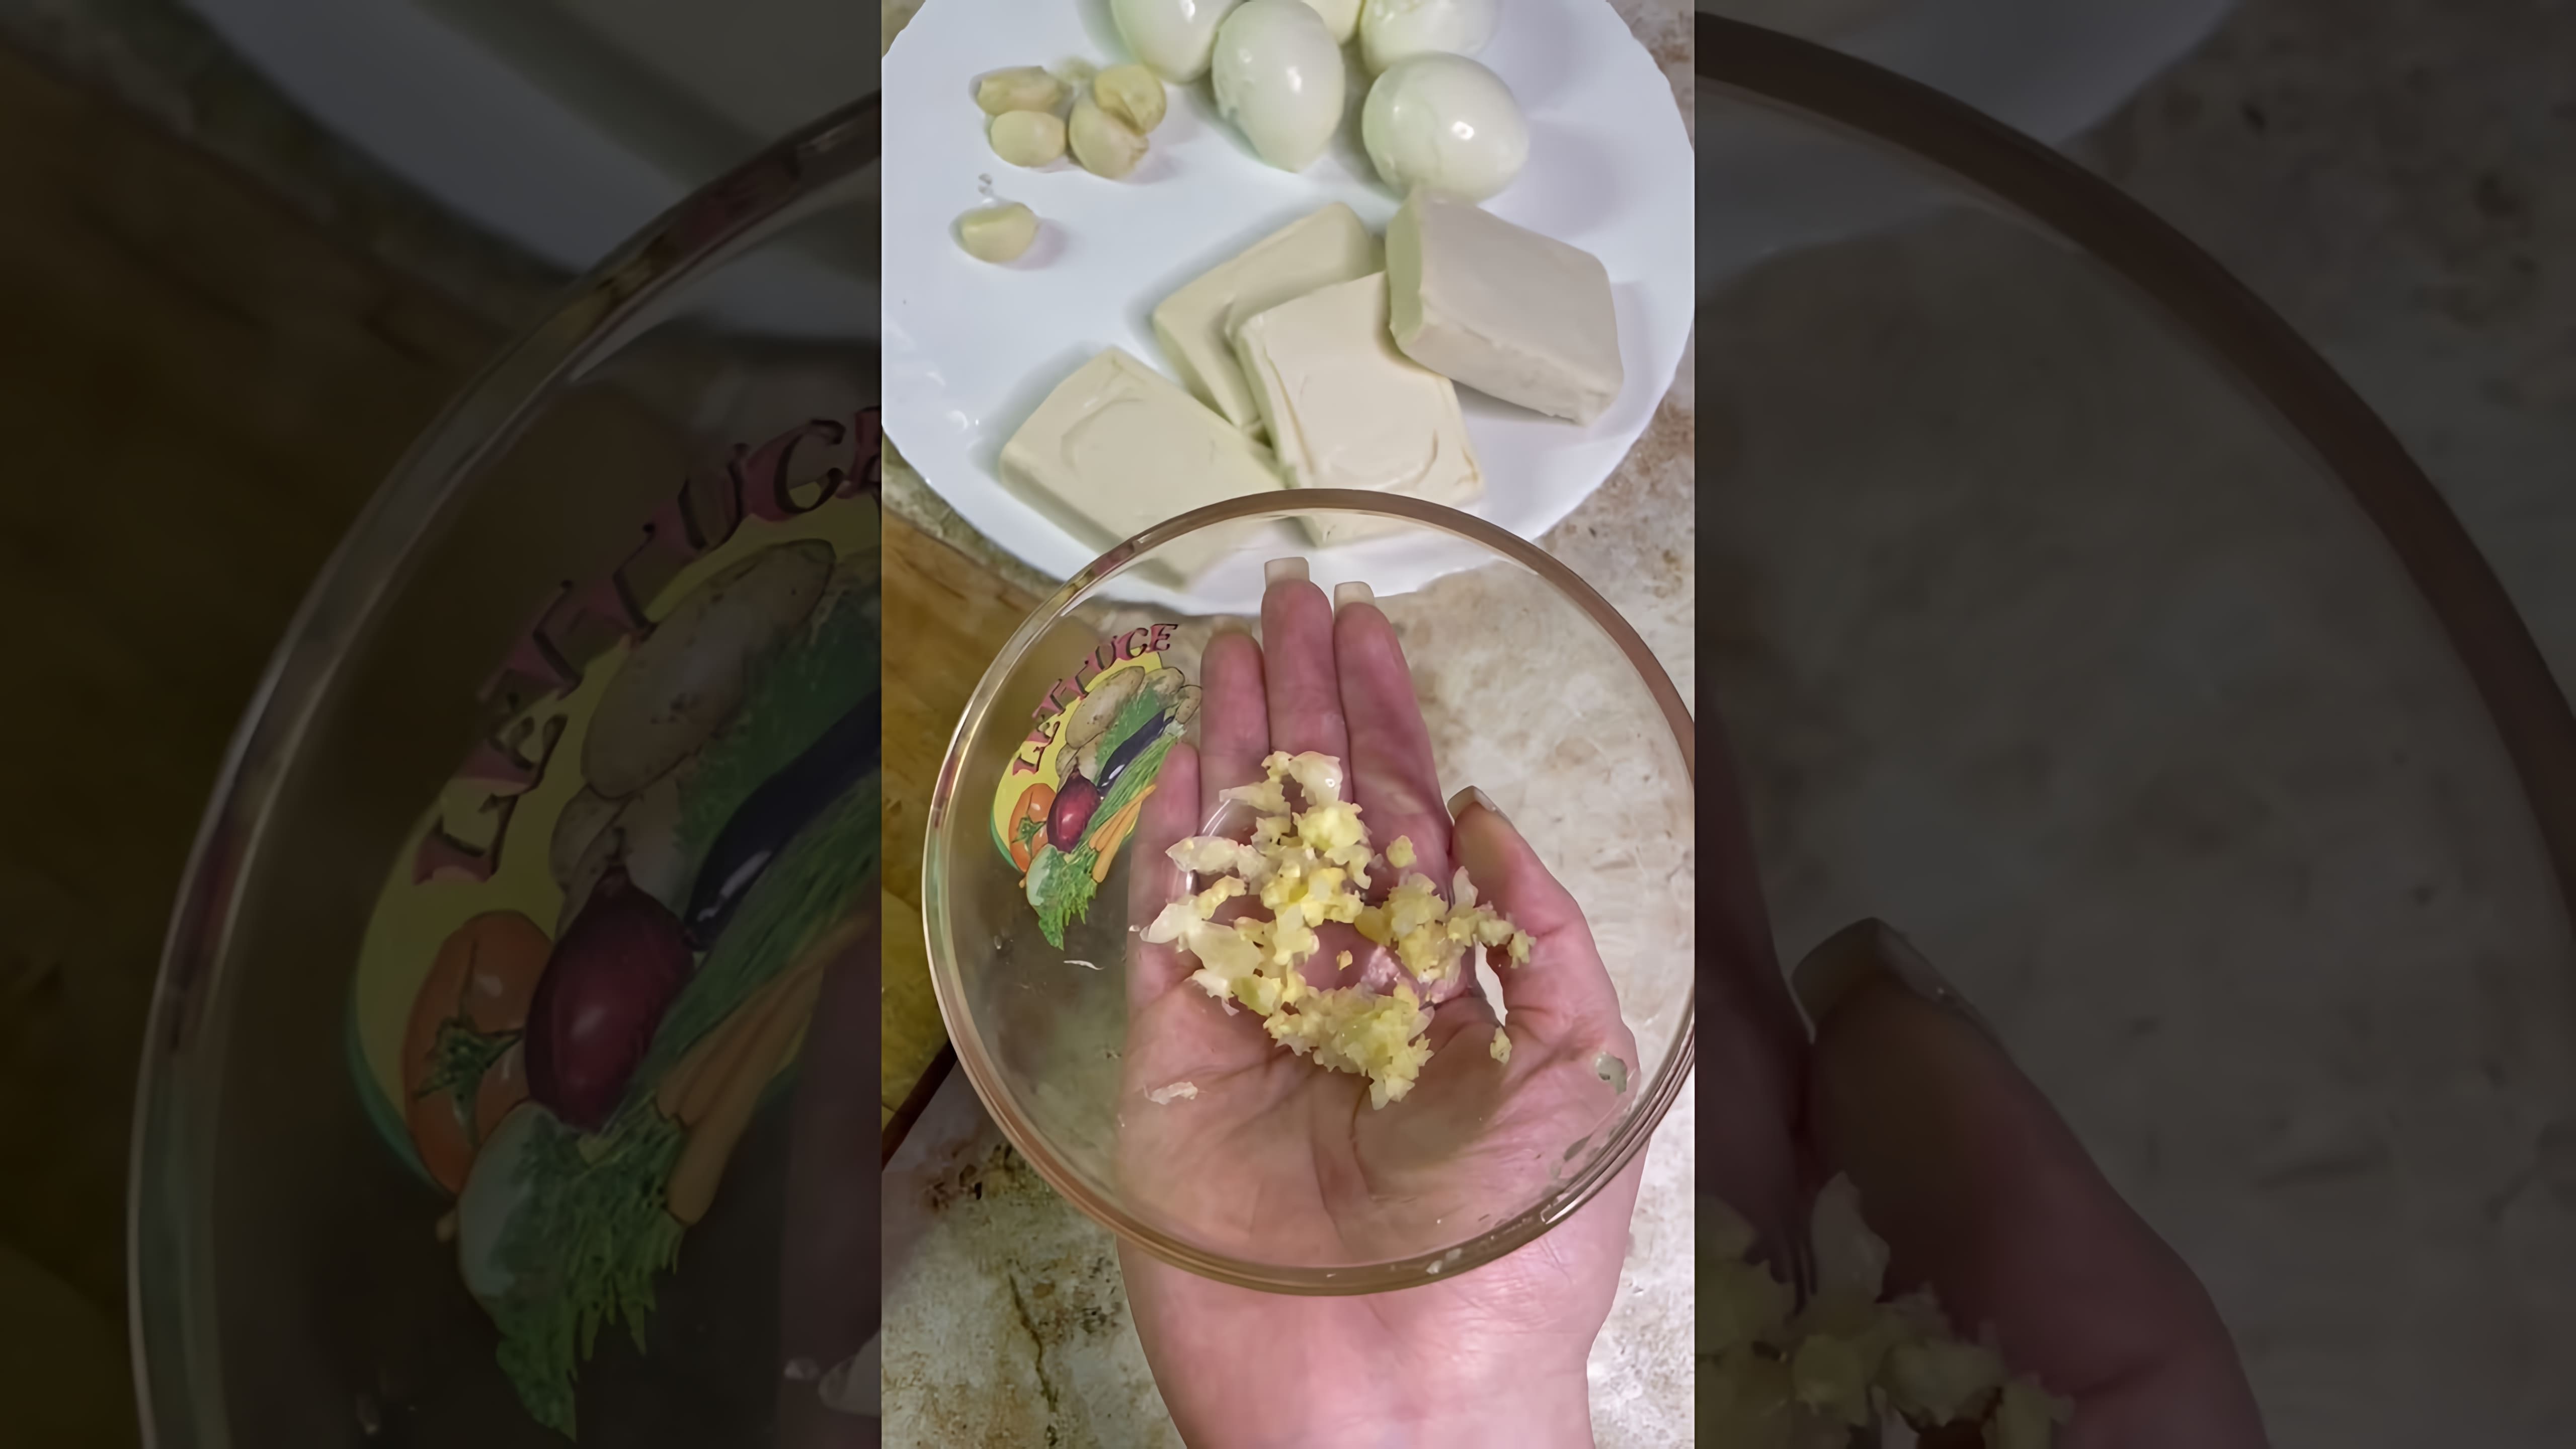 В этом видео демонстрируется процесс приготовления бюджетной закуски из плавленых сырков, яиц, чеснока и майонеза